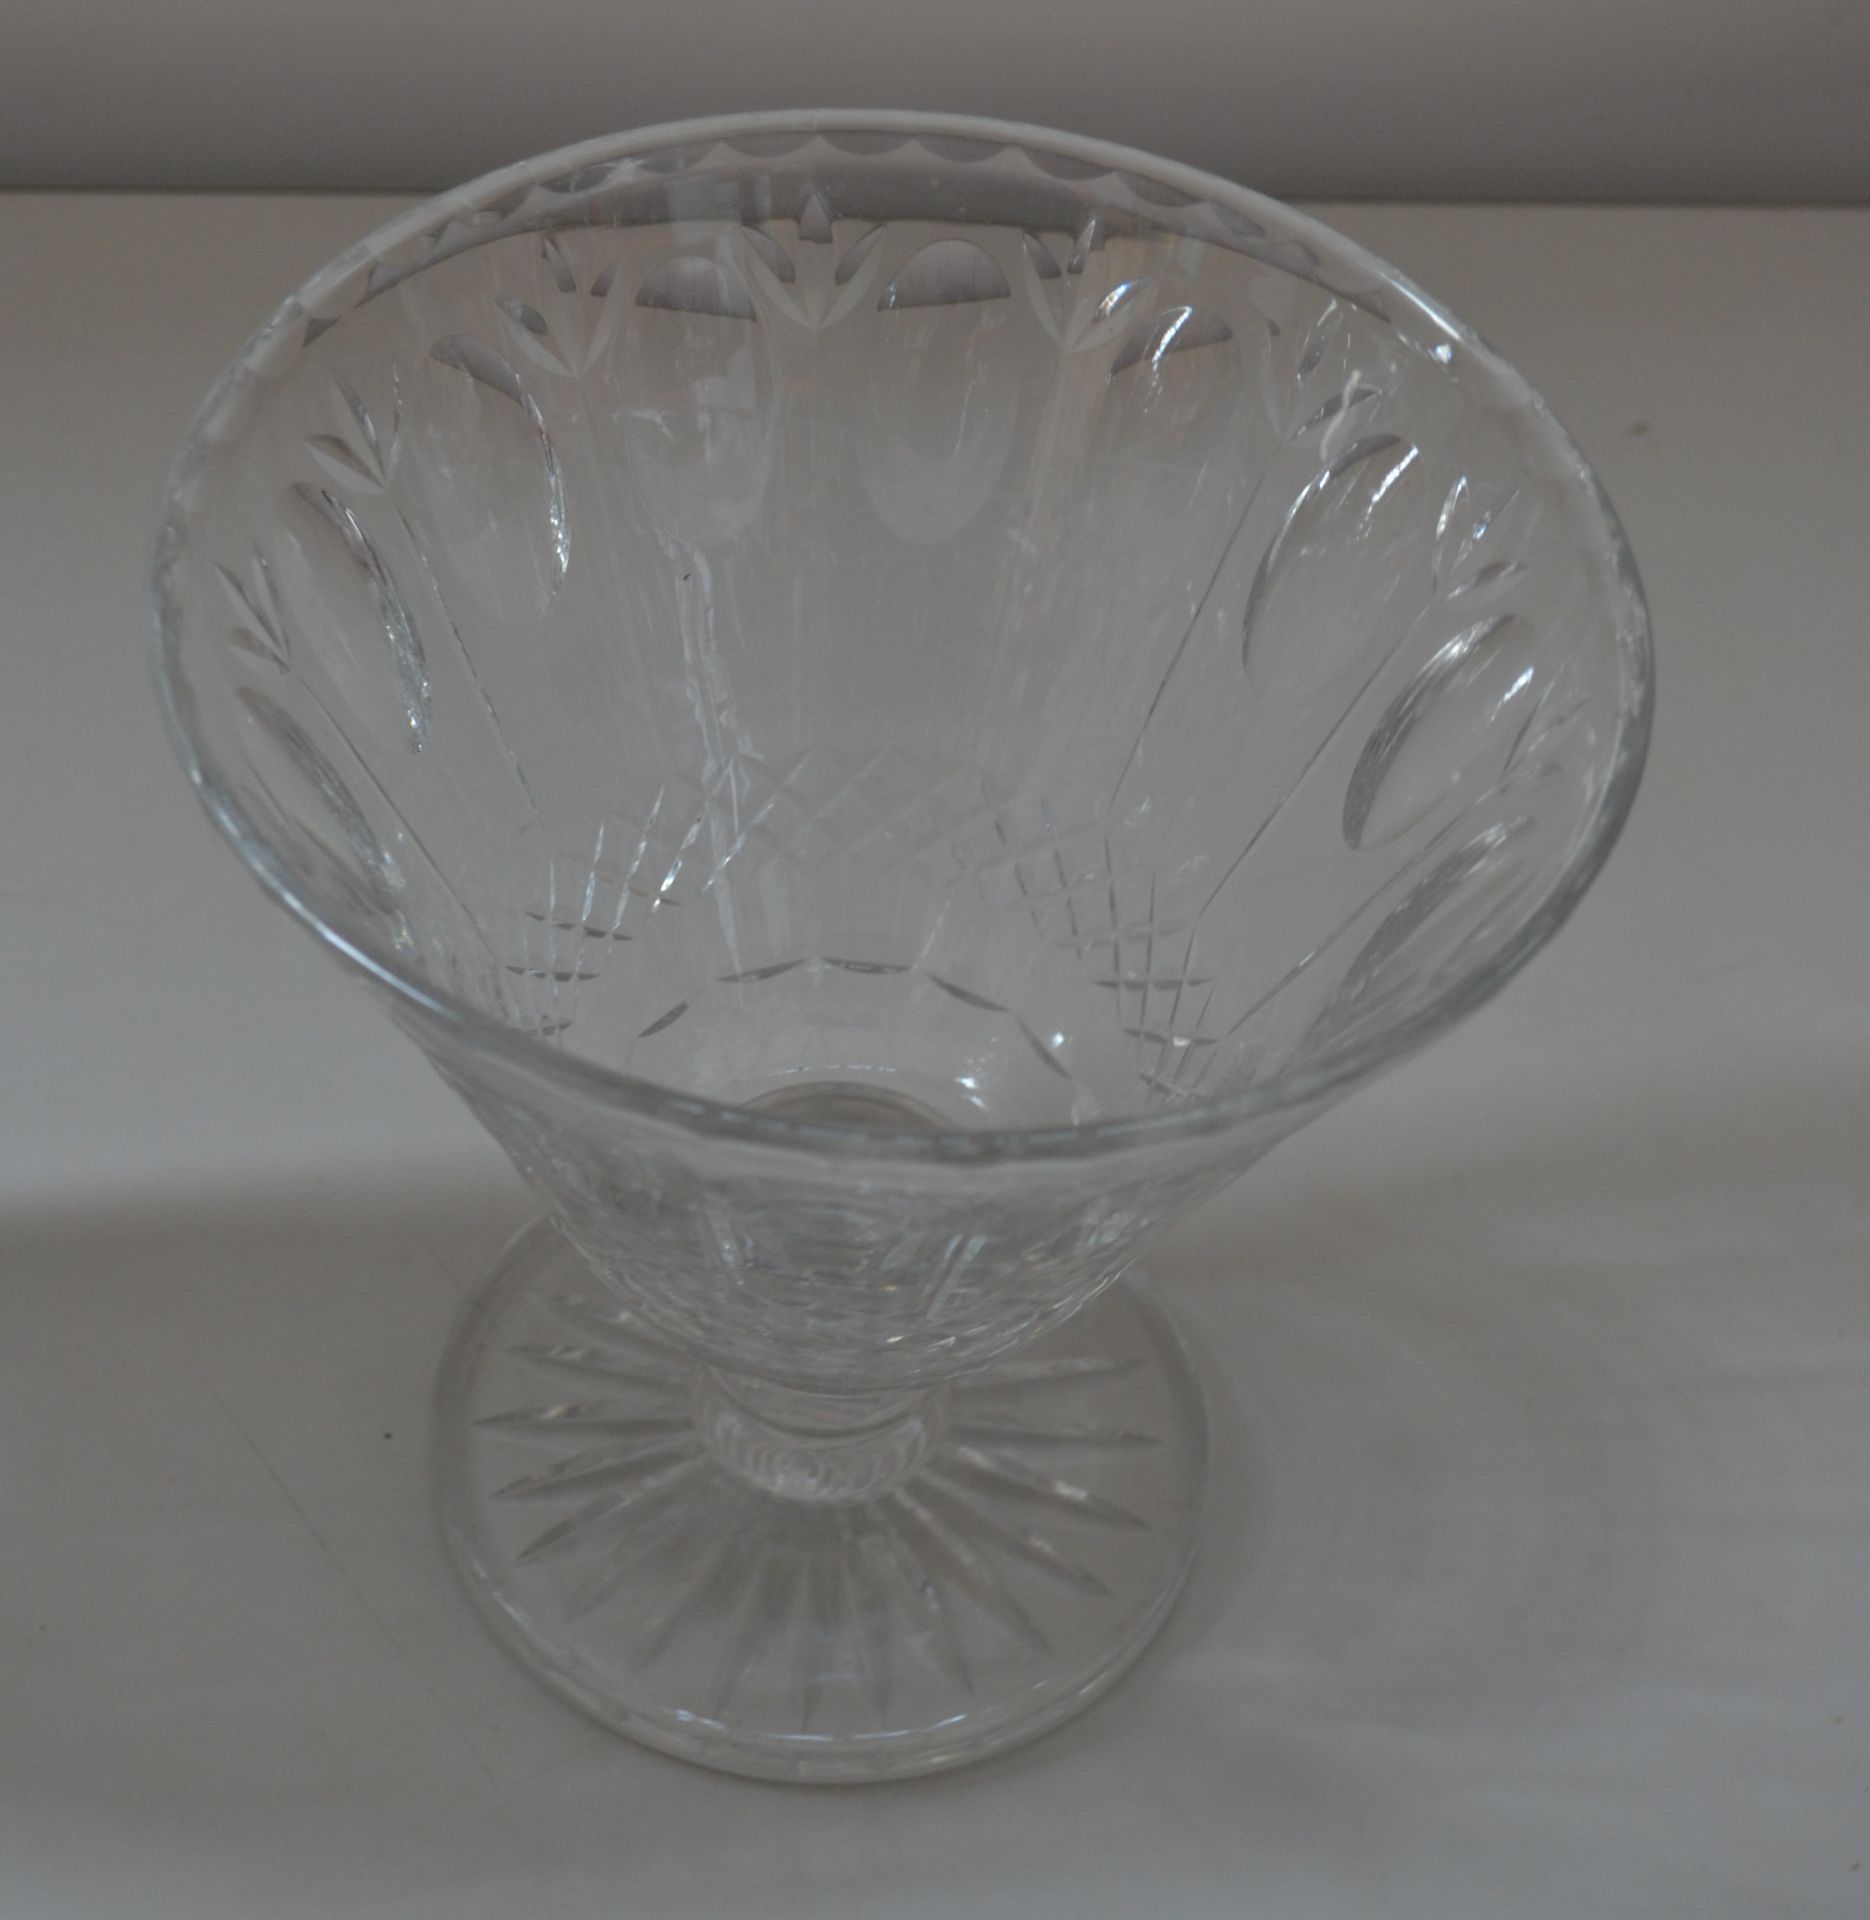 2 x Vintage Glass Vases - Dimensions:H25/H18cm - Ref J2186 - CL314 - Image 2 of 3